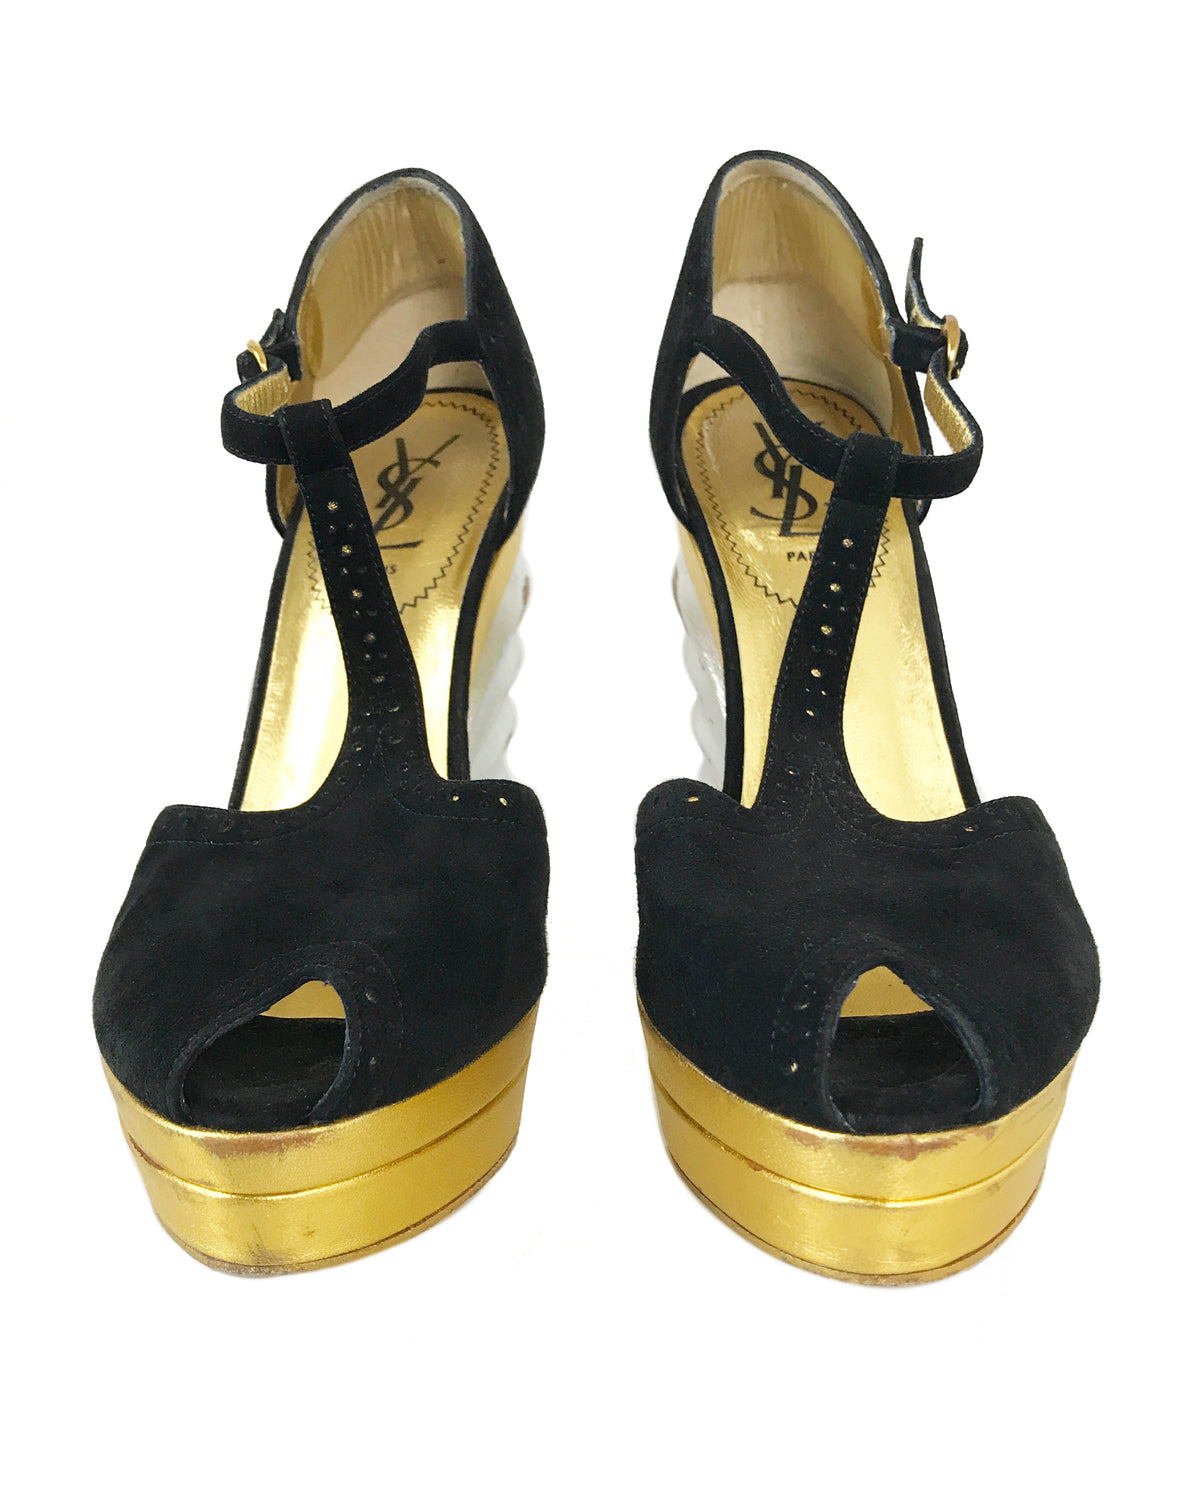 1987 SHOP Vintage Yves Saint Laurent Metallic Disco Wedges shoes gold silver black suede 